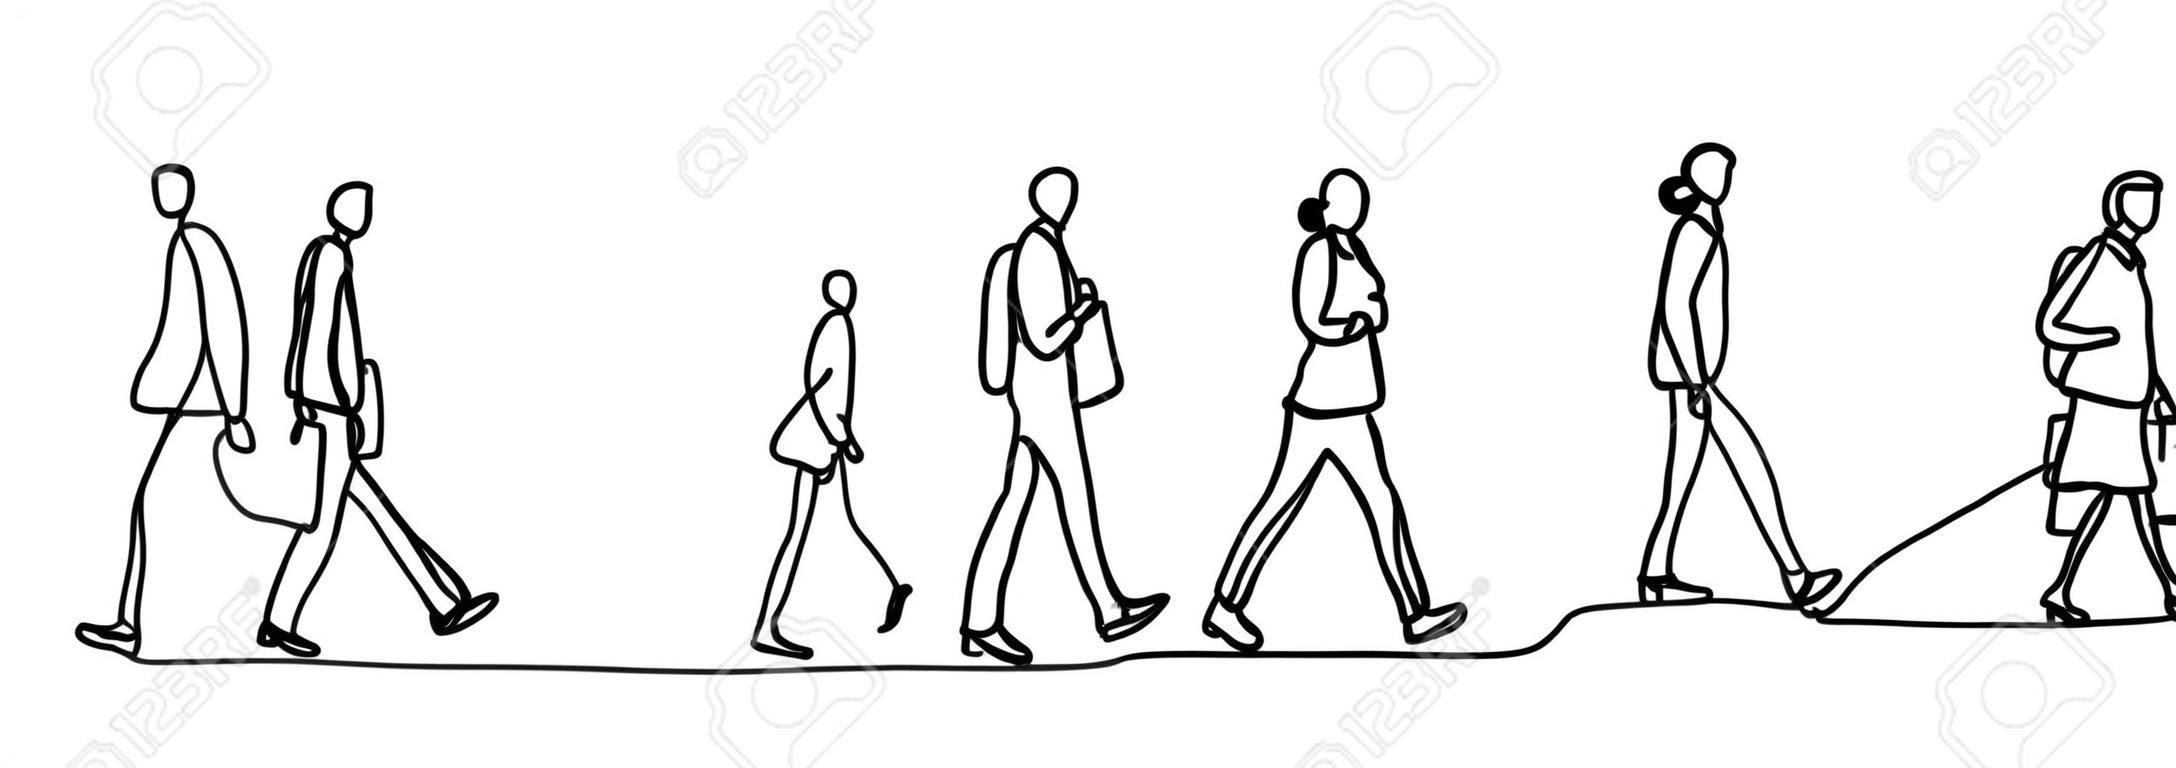 Viajeros urbanos una línea continua dibujo minimalismo diseño boceto dibujado a mano ilustración vectorial. Personas que caminan antes o después del horario laboral.